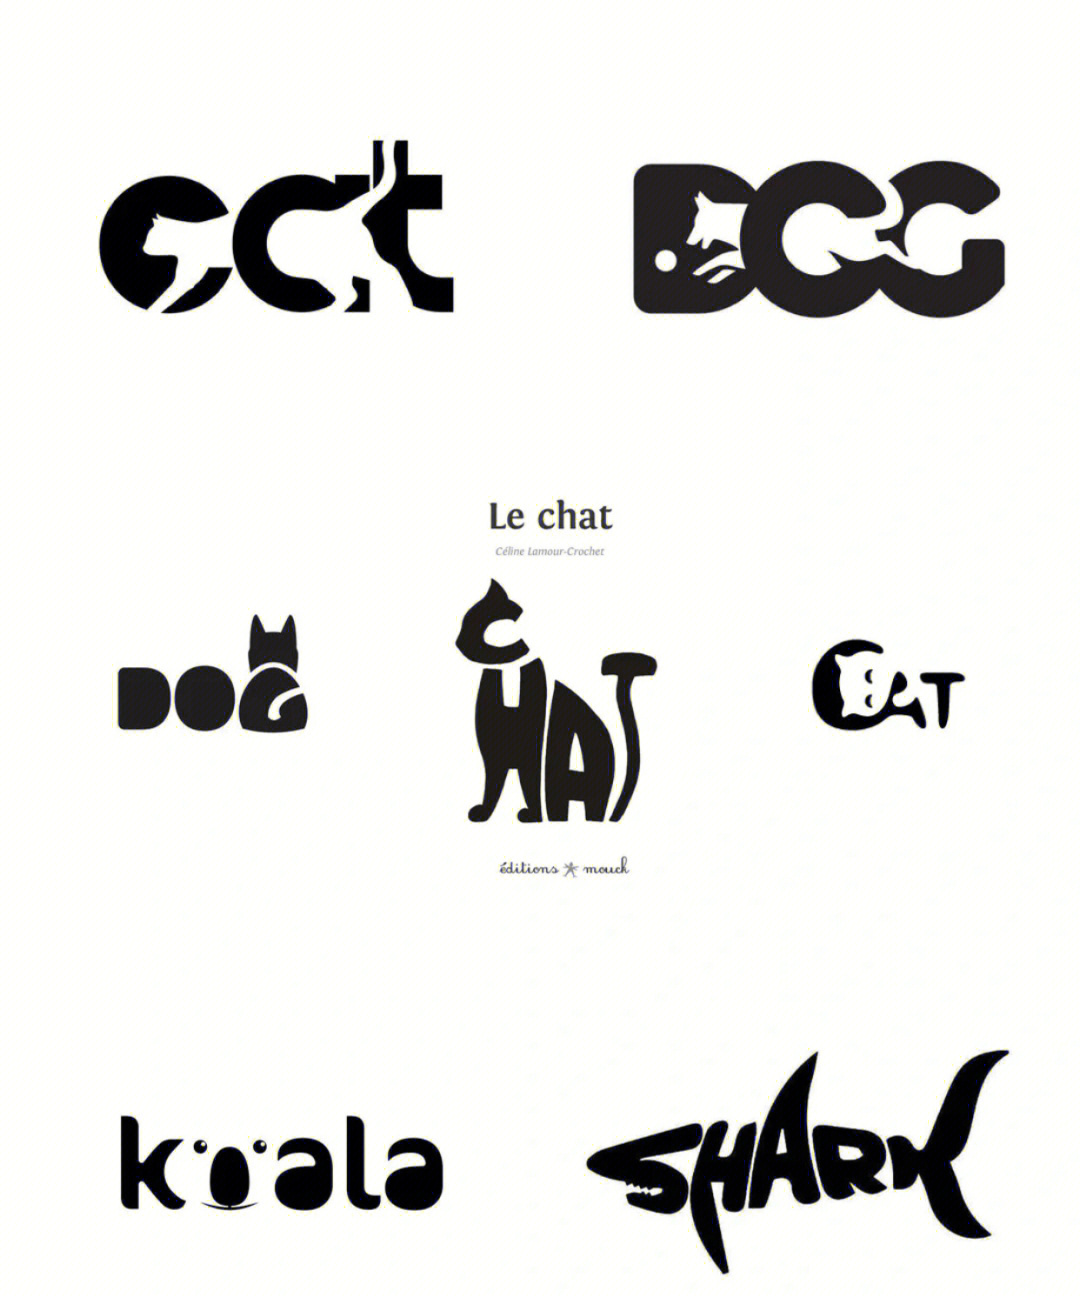 正负形创意动物logo设计,结合名称嵌入动物镂空图案形成极具特色的